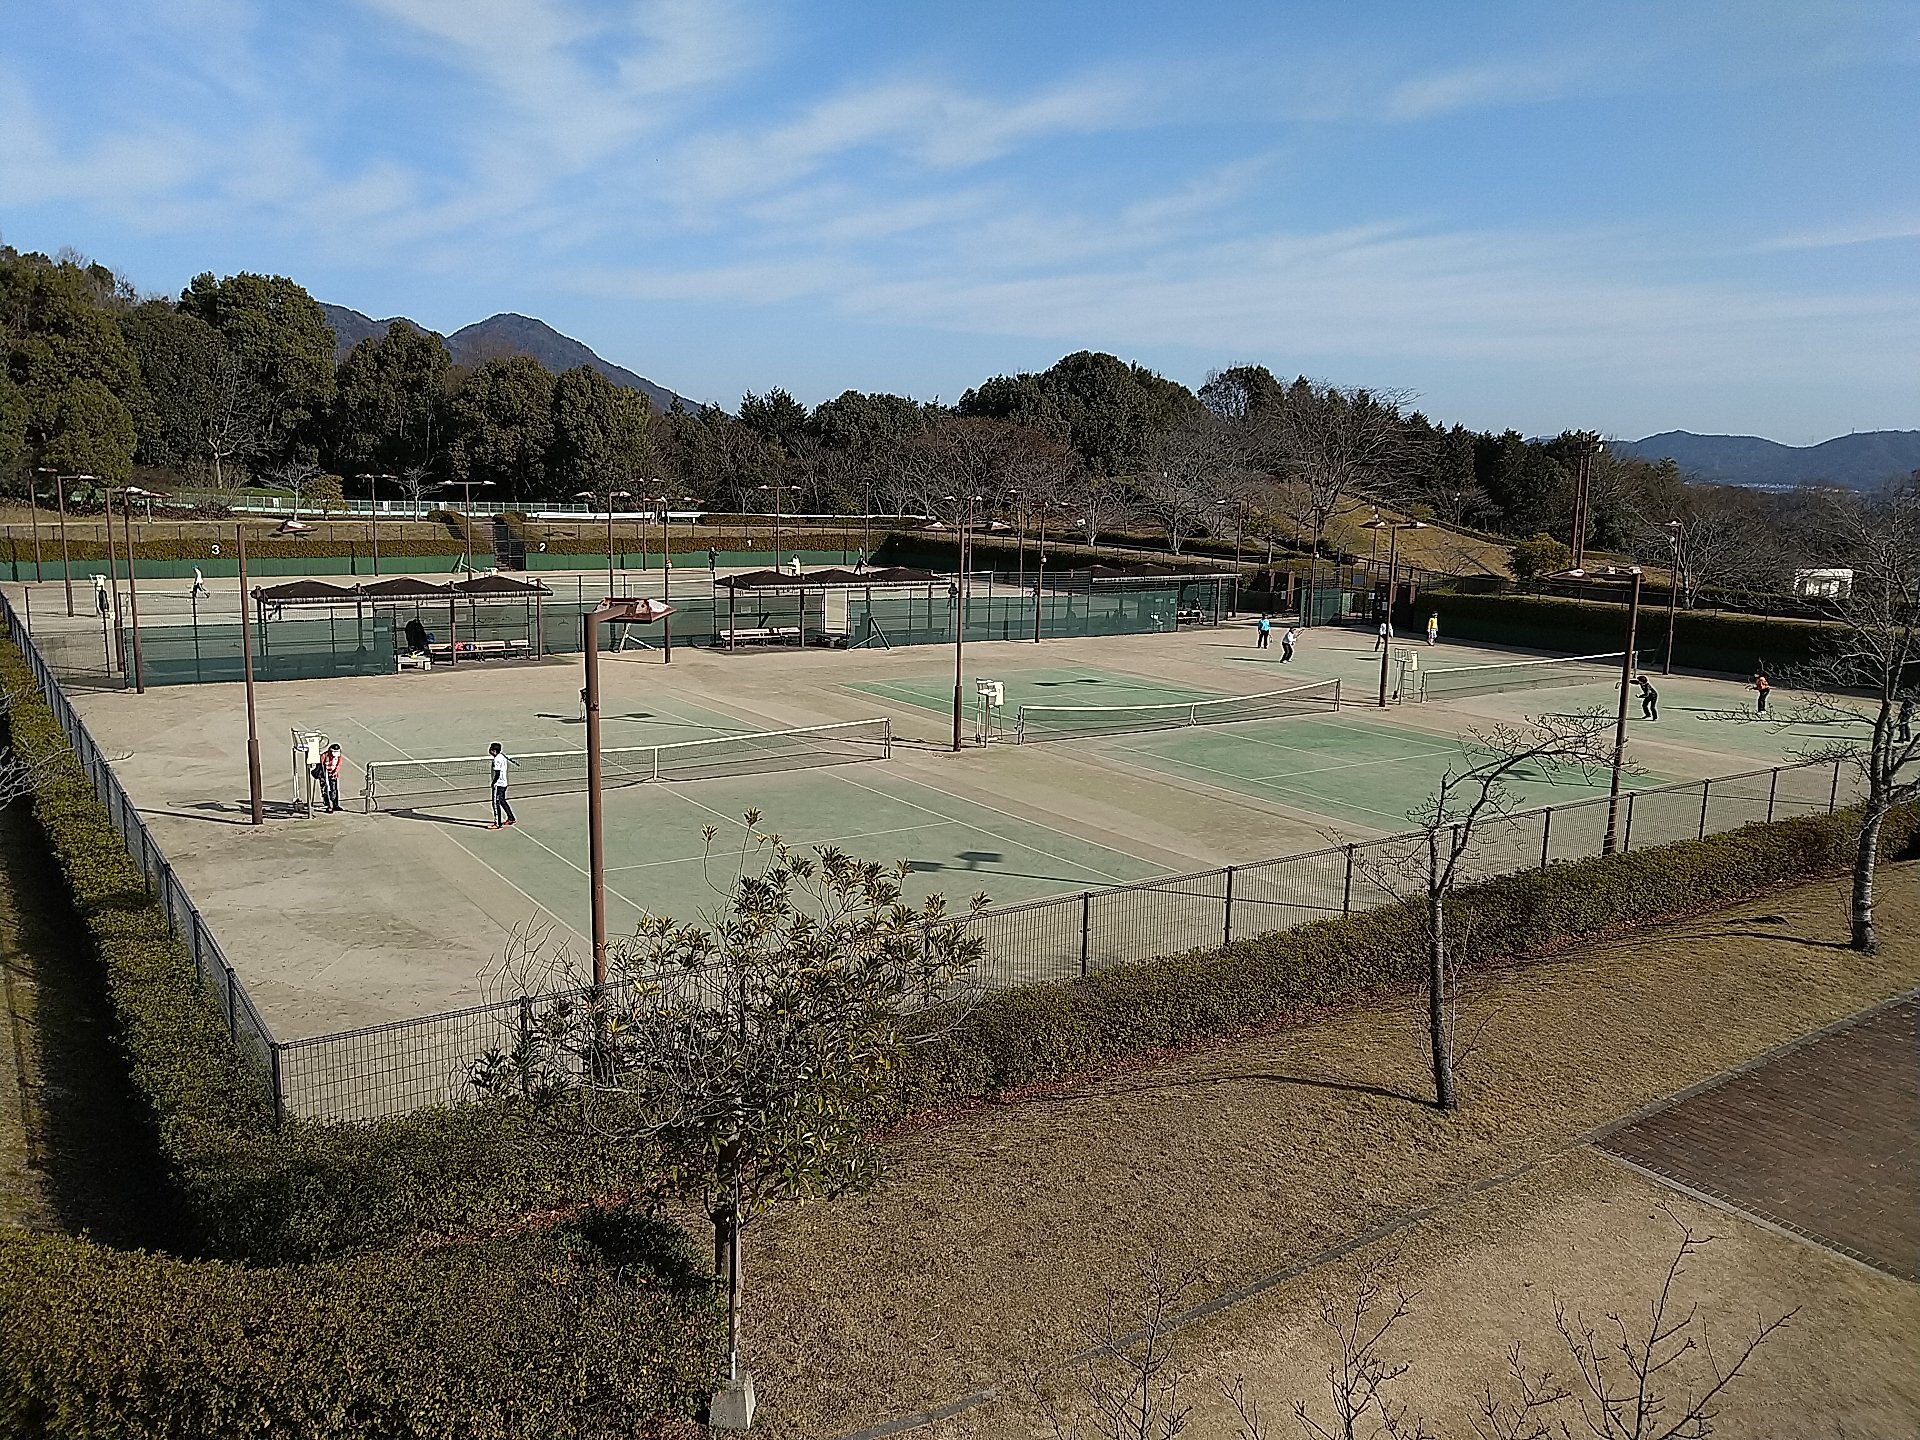 テニスコート (1)